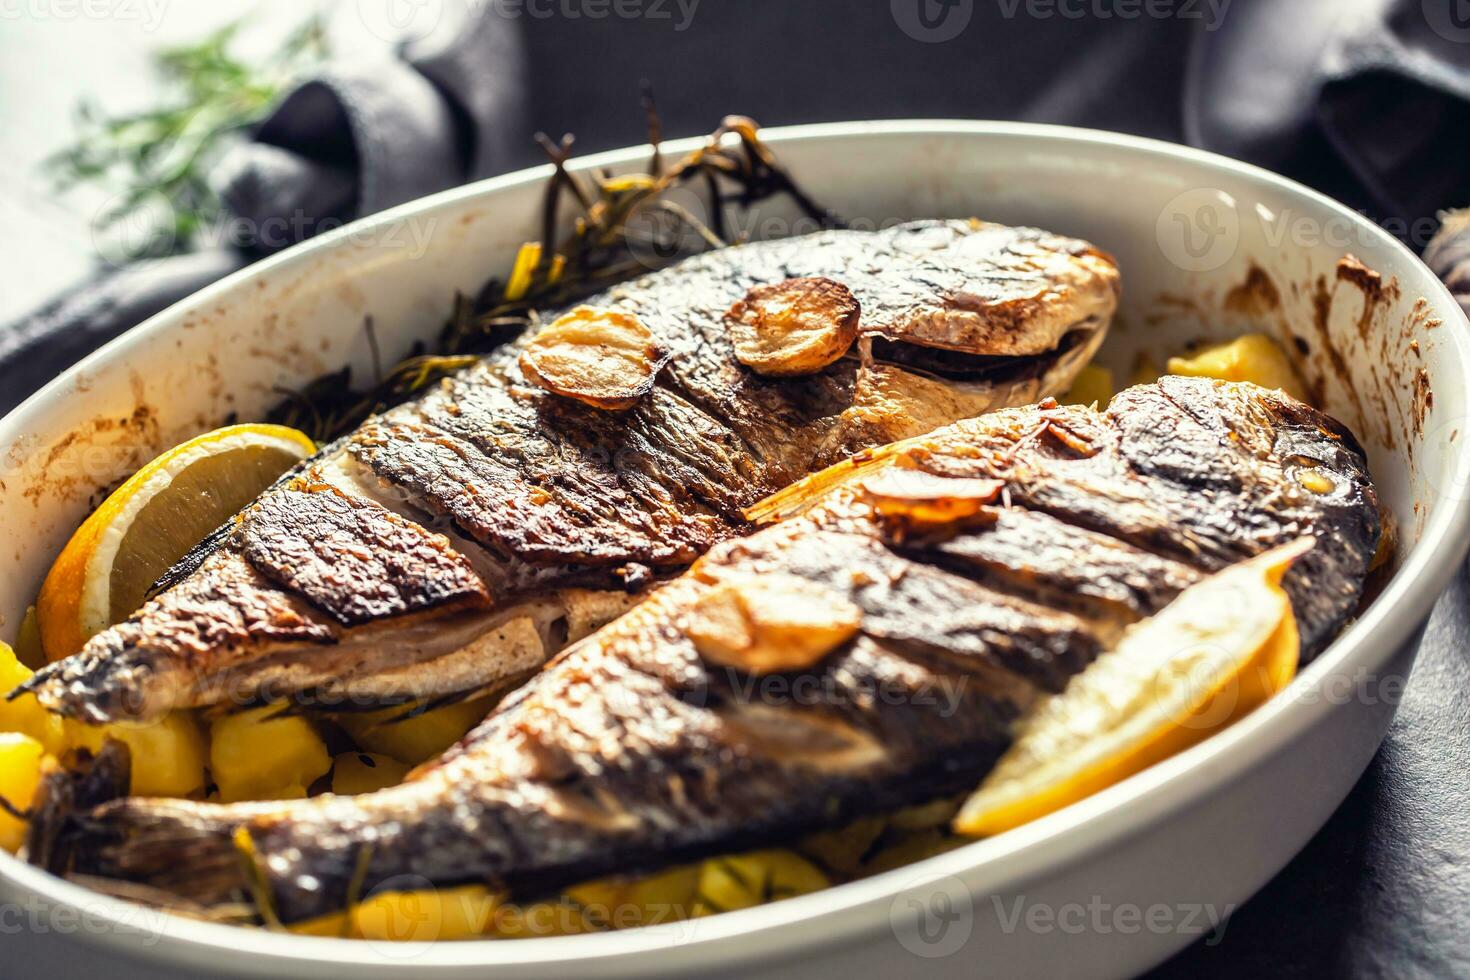 geroosterd middellandse Zee vis brasem met aardappelen rozemarijn en citroen foto